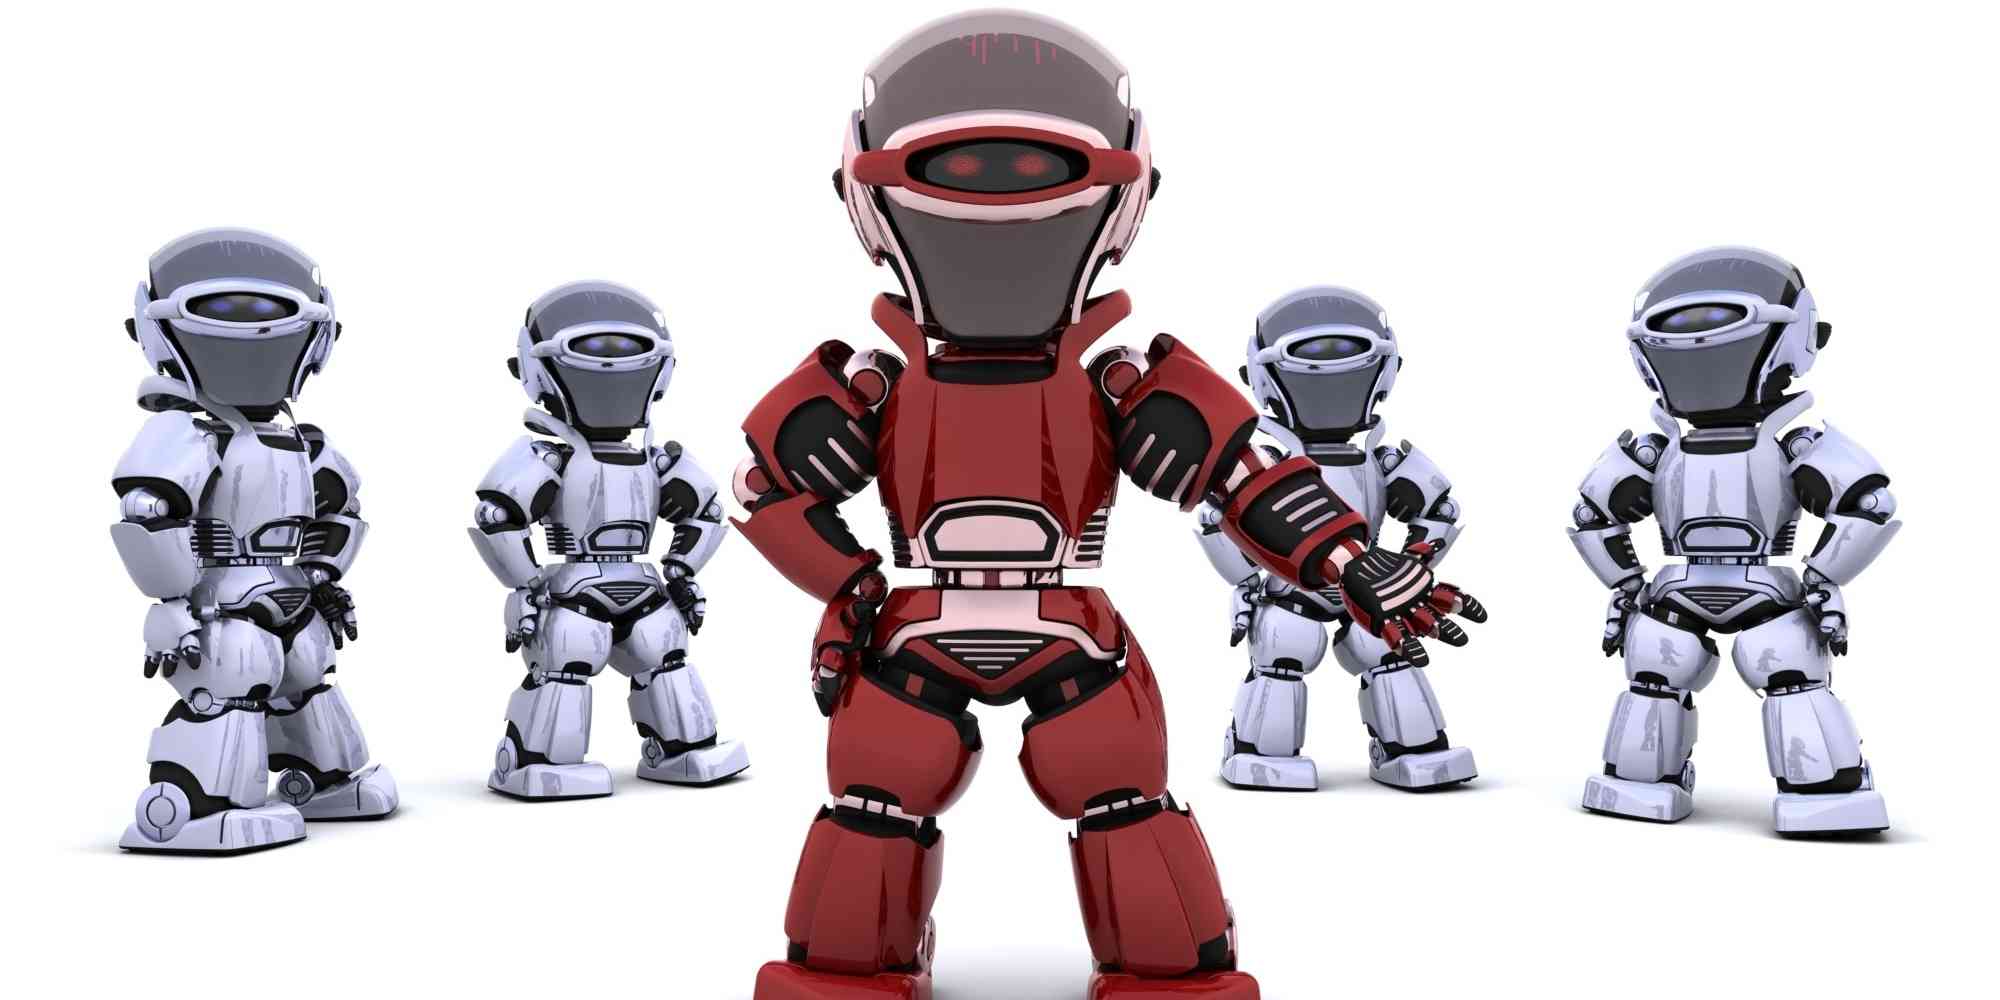 红色机器人站在白色背景前，周围是一群穿着不同颜色衣服的机器人。他们一起站成一排，似乎正在讨论什么重要事情。红色机器人似乎是领导或领袖的角色，而其他机器人则围绕着它转圈。这场景充满了神秘和令人兴奋的感觉。